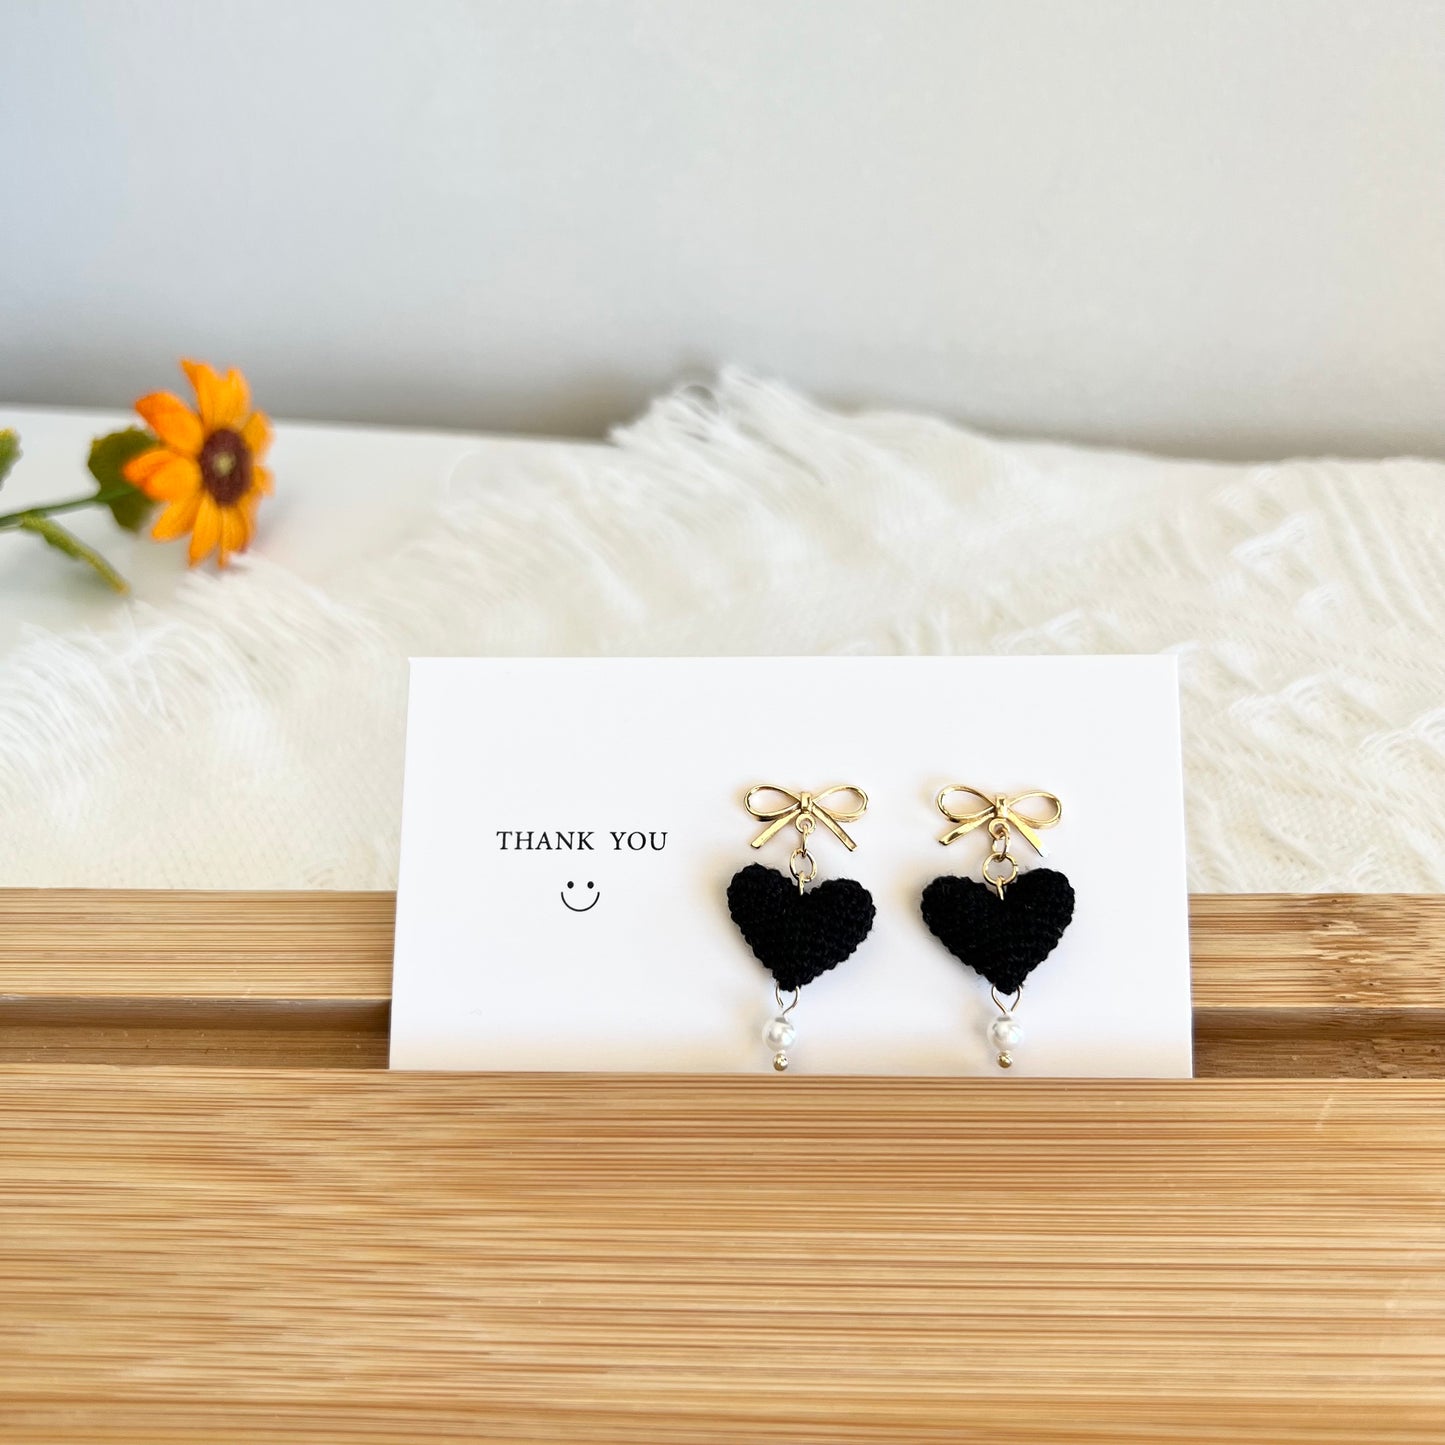 Micro Crochet Earrings | Heart Drop Earrings | Handmade Gifts for Her